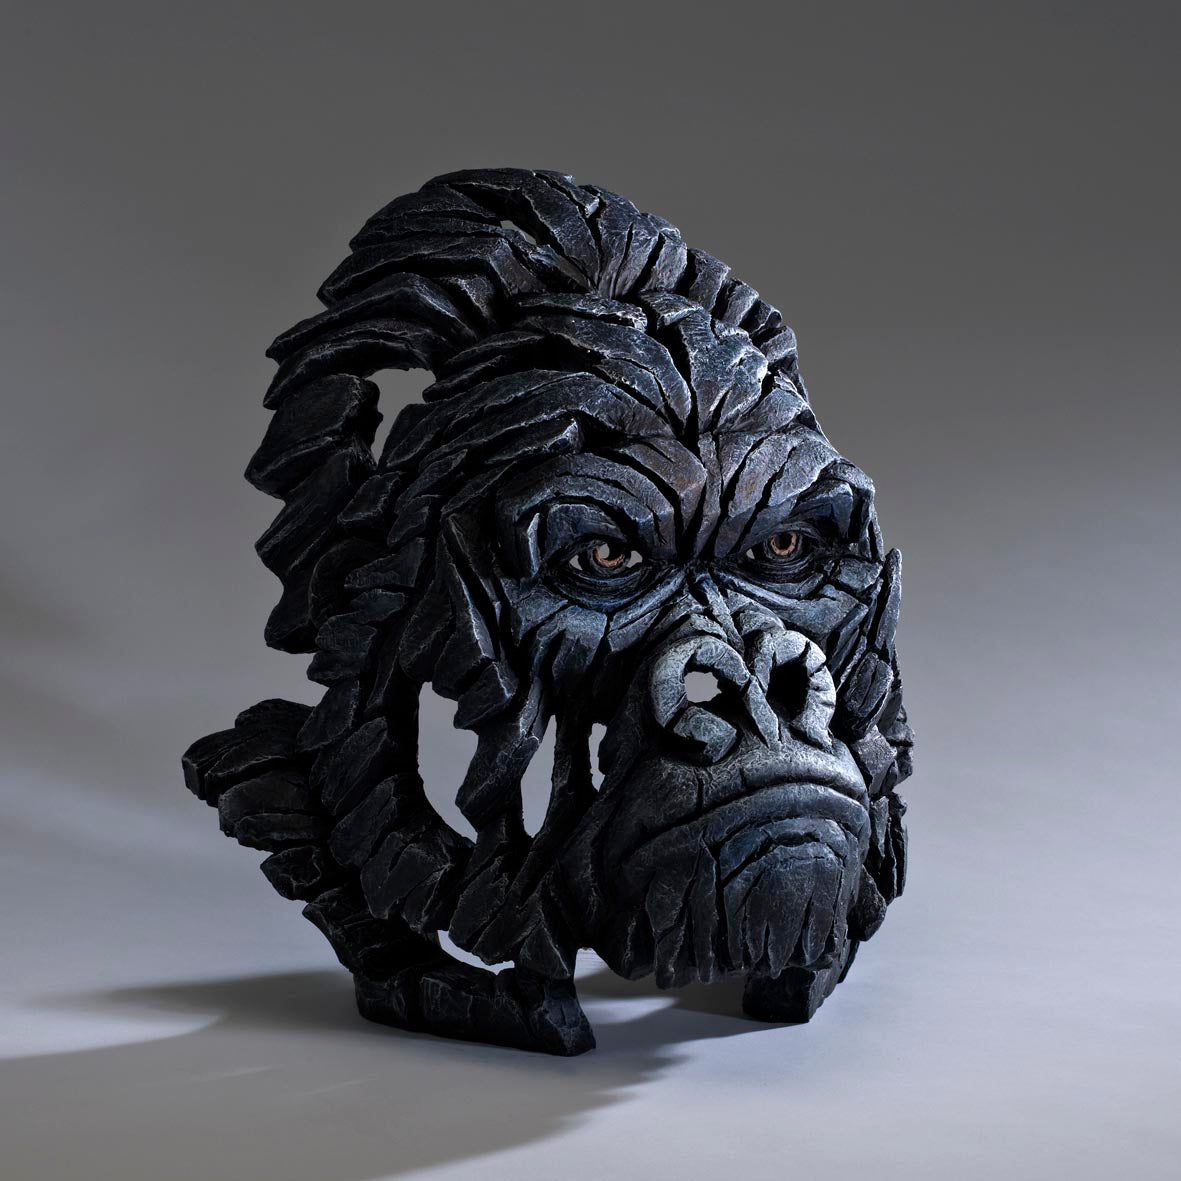 Edge Sculpture Gorilla Bust by Matt Buckley